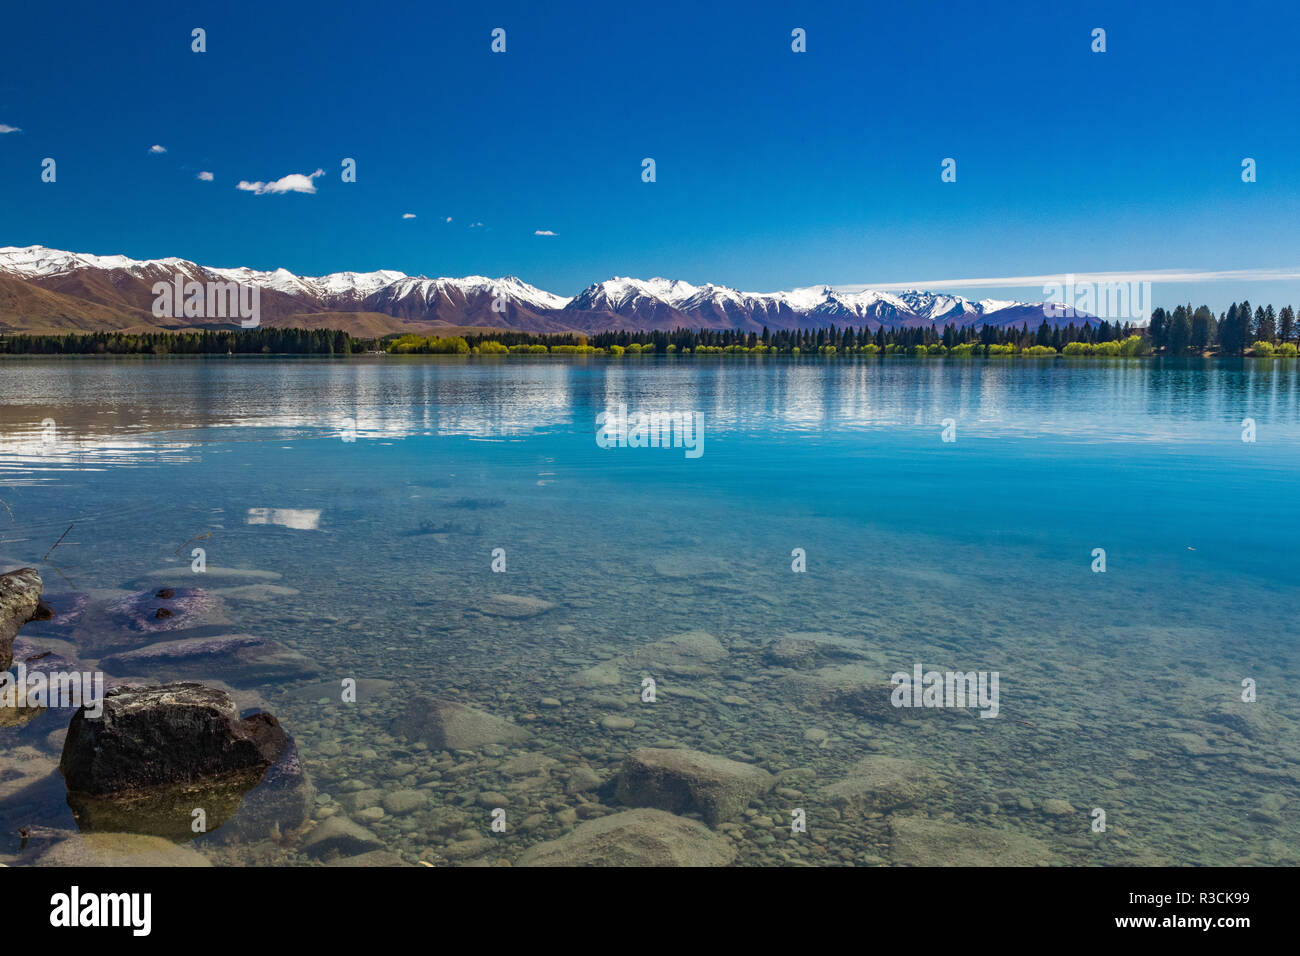 Lake Ruataniwha, Neuseeland, Südinsel, Bäume und Berge, Wasser Reflexionen Stockfoto